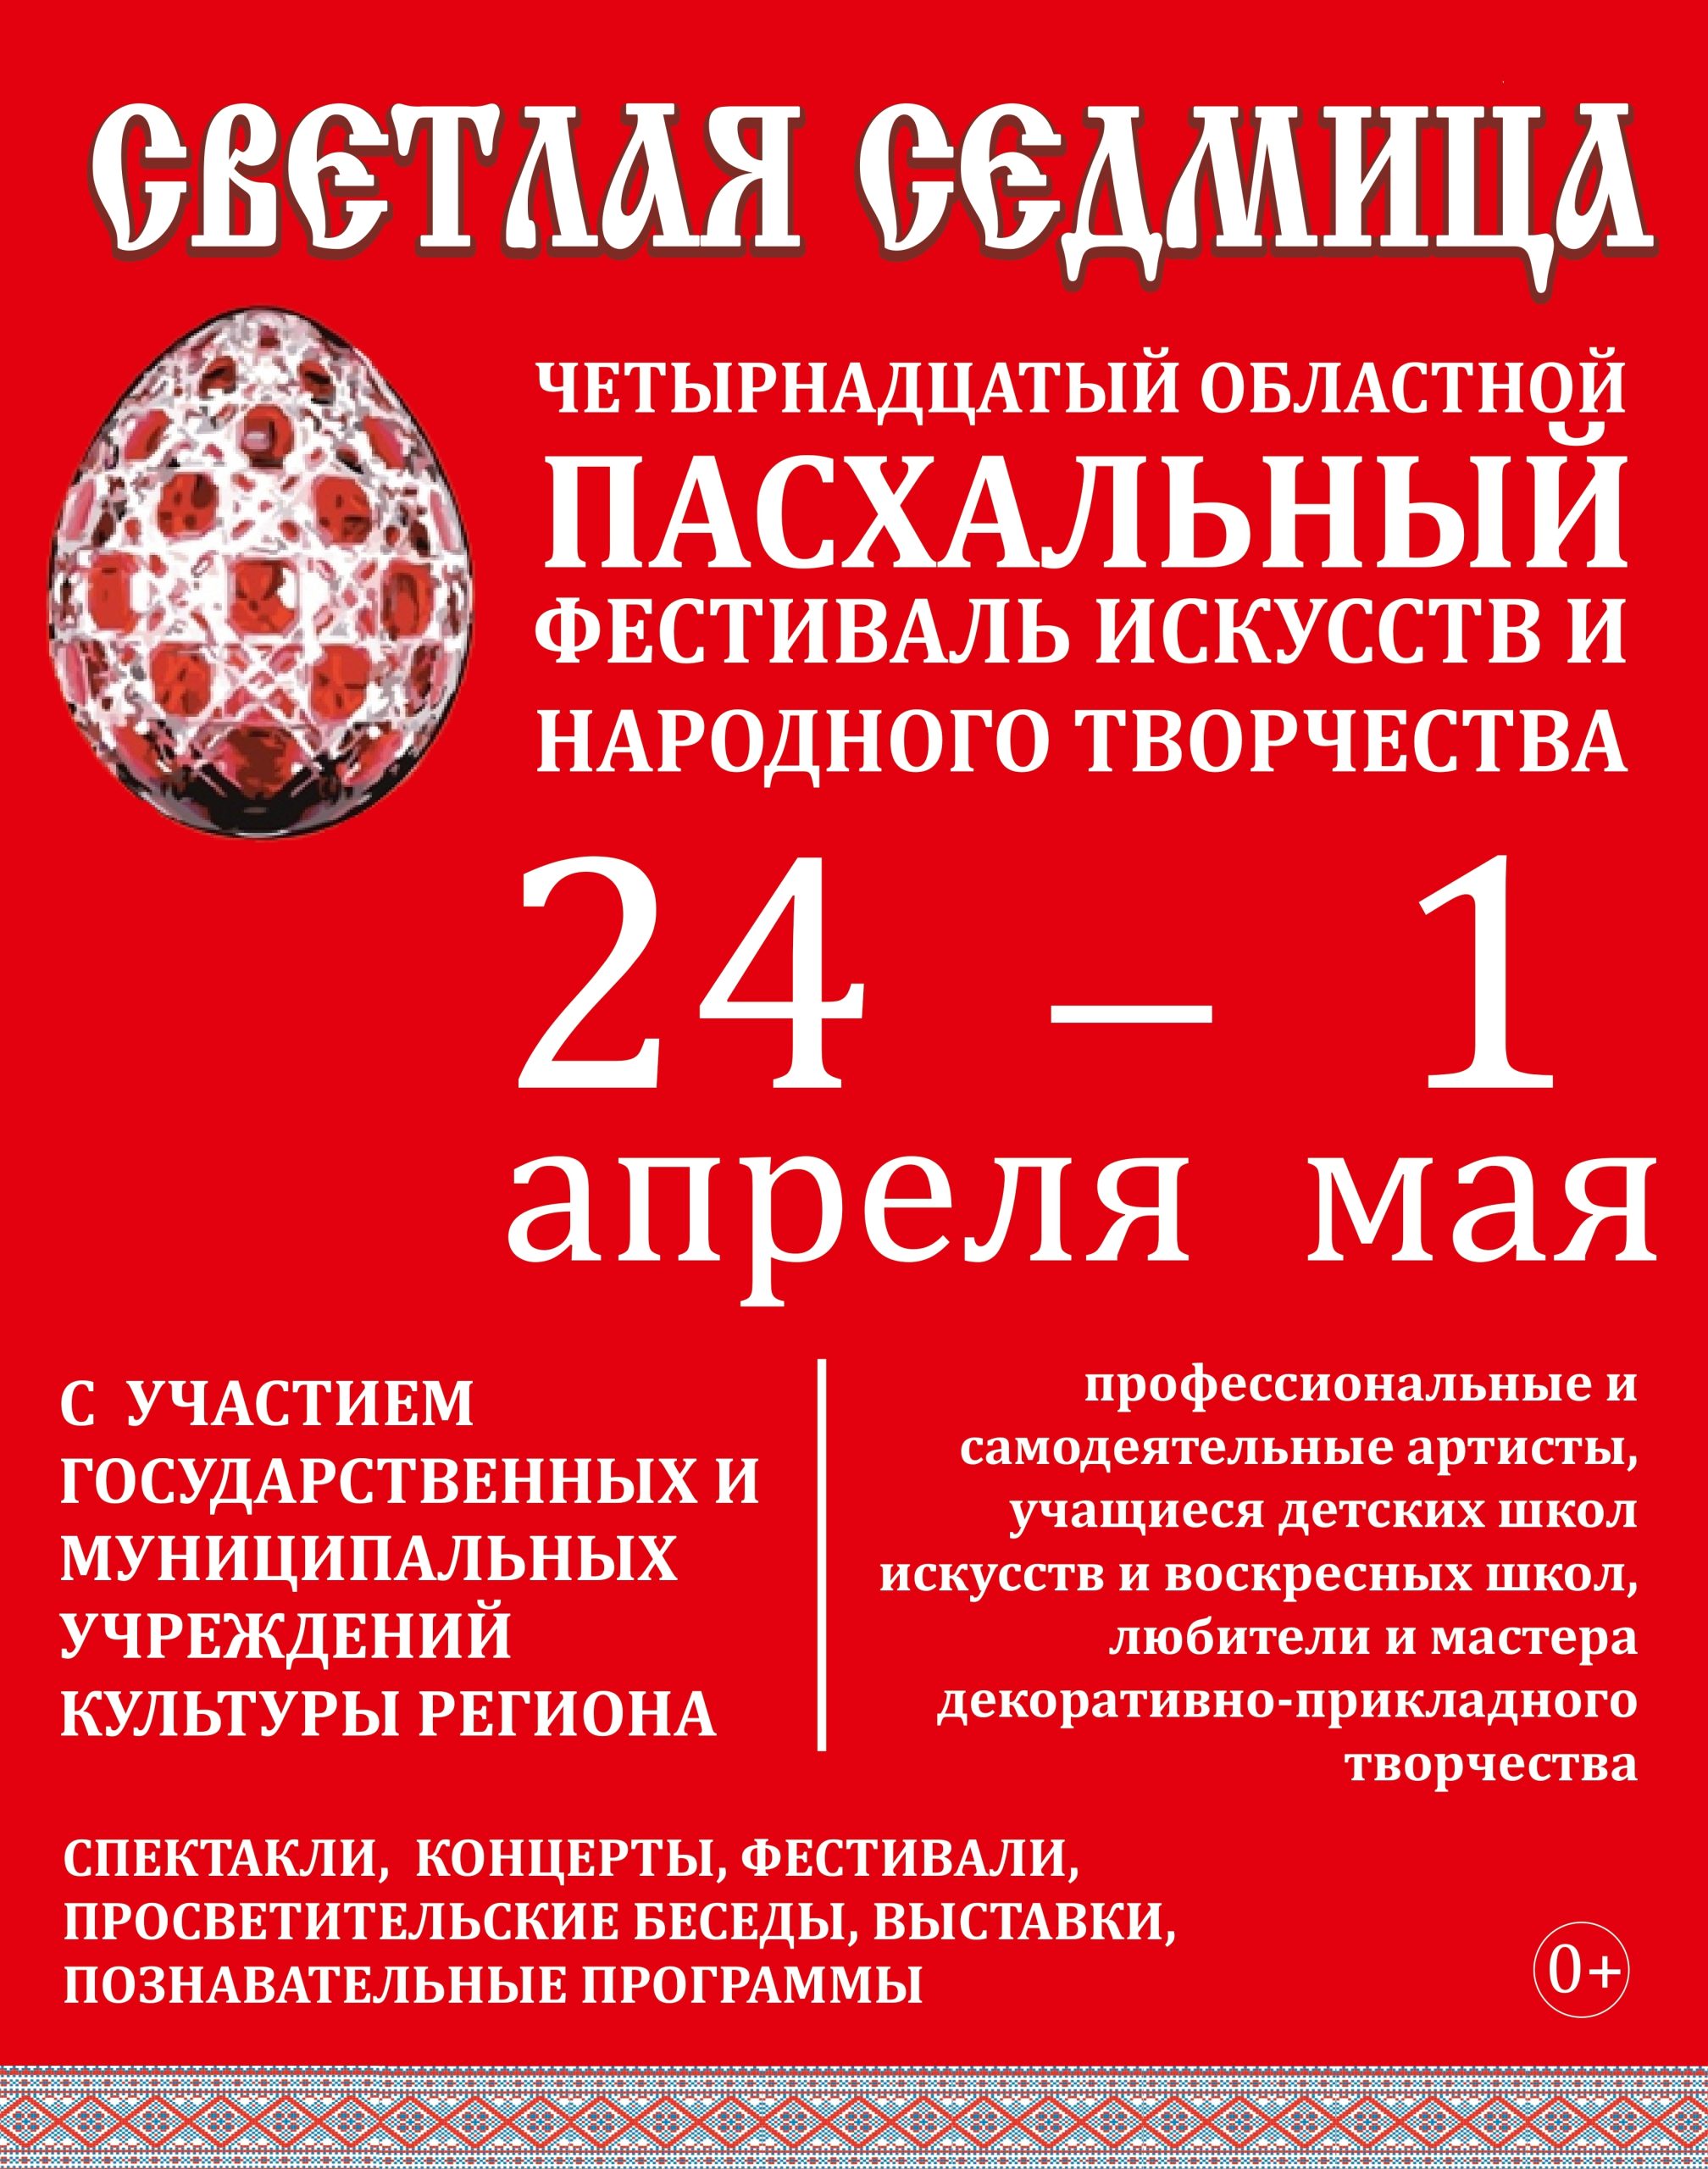 С 24 апреля на Брянщине стартует XIV региональный Пасхальный фестиваль